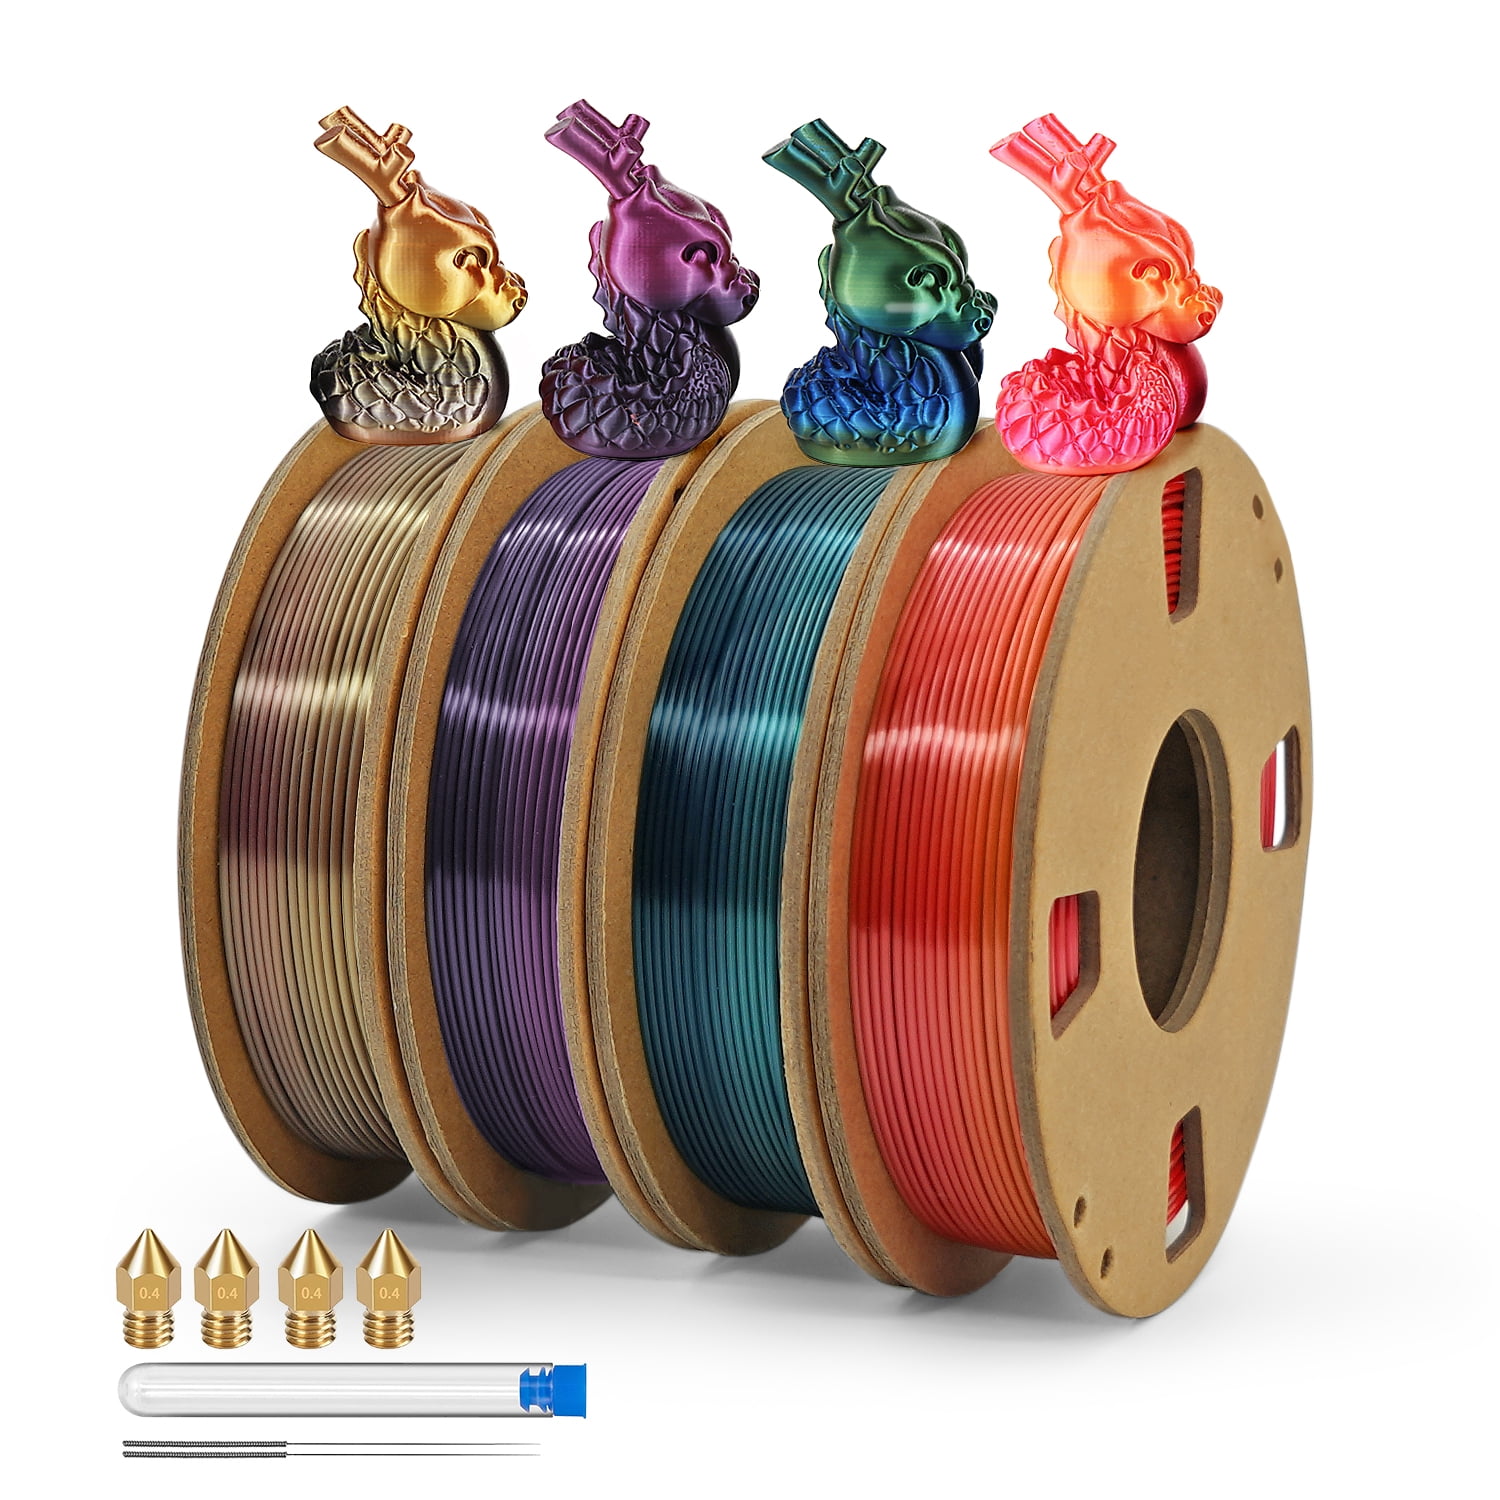 ATARAXIA ART PETG Filament 1.75mm,3D Printer Filament,1Kg(2.2lb) tidy  winding Spool, Dimensional Accuracy ±0.02mm, with Filament Storage Vacuum  Bag, Fit Most FDM 3D Printer, Pantone Match, PETG Gold 